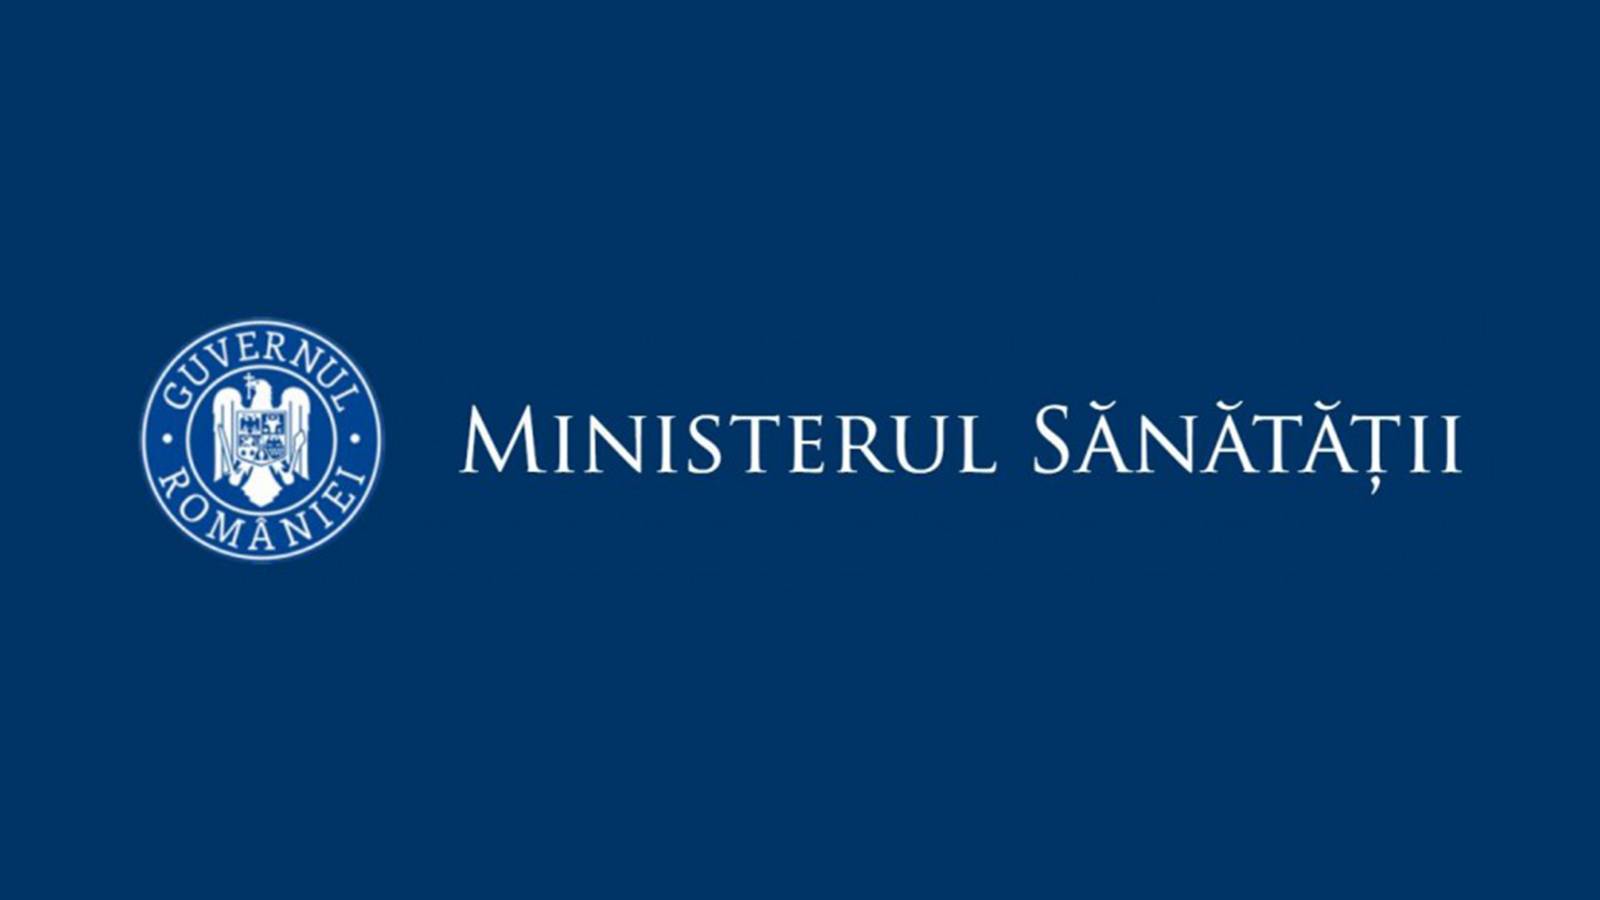 Ministerul Sanatatii Judetele din Romania cu Rate de Incidenta Mari la Coronavirus